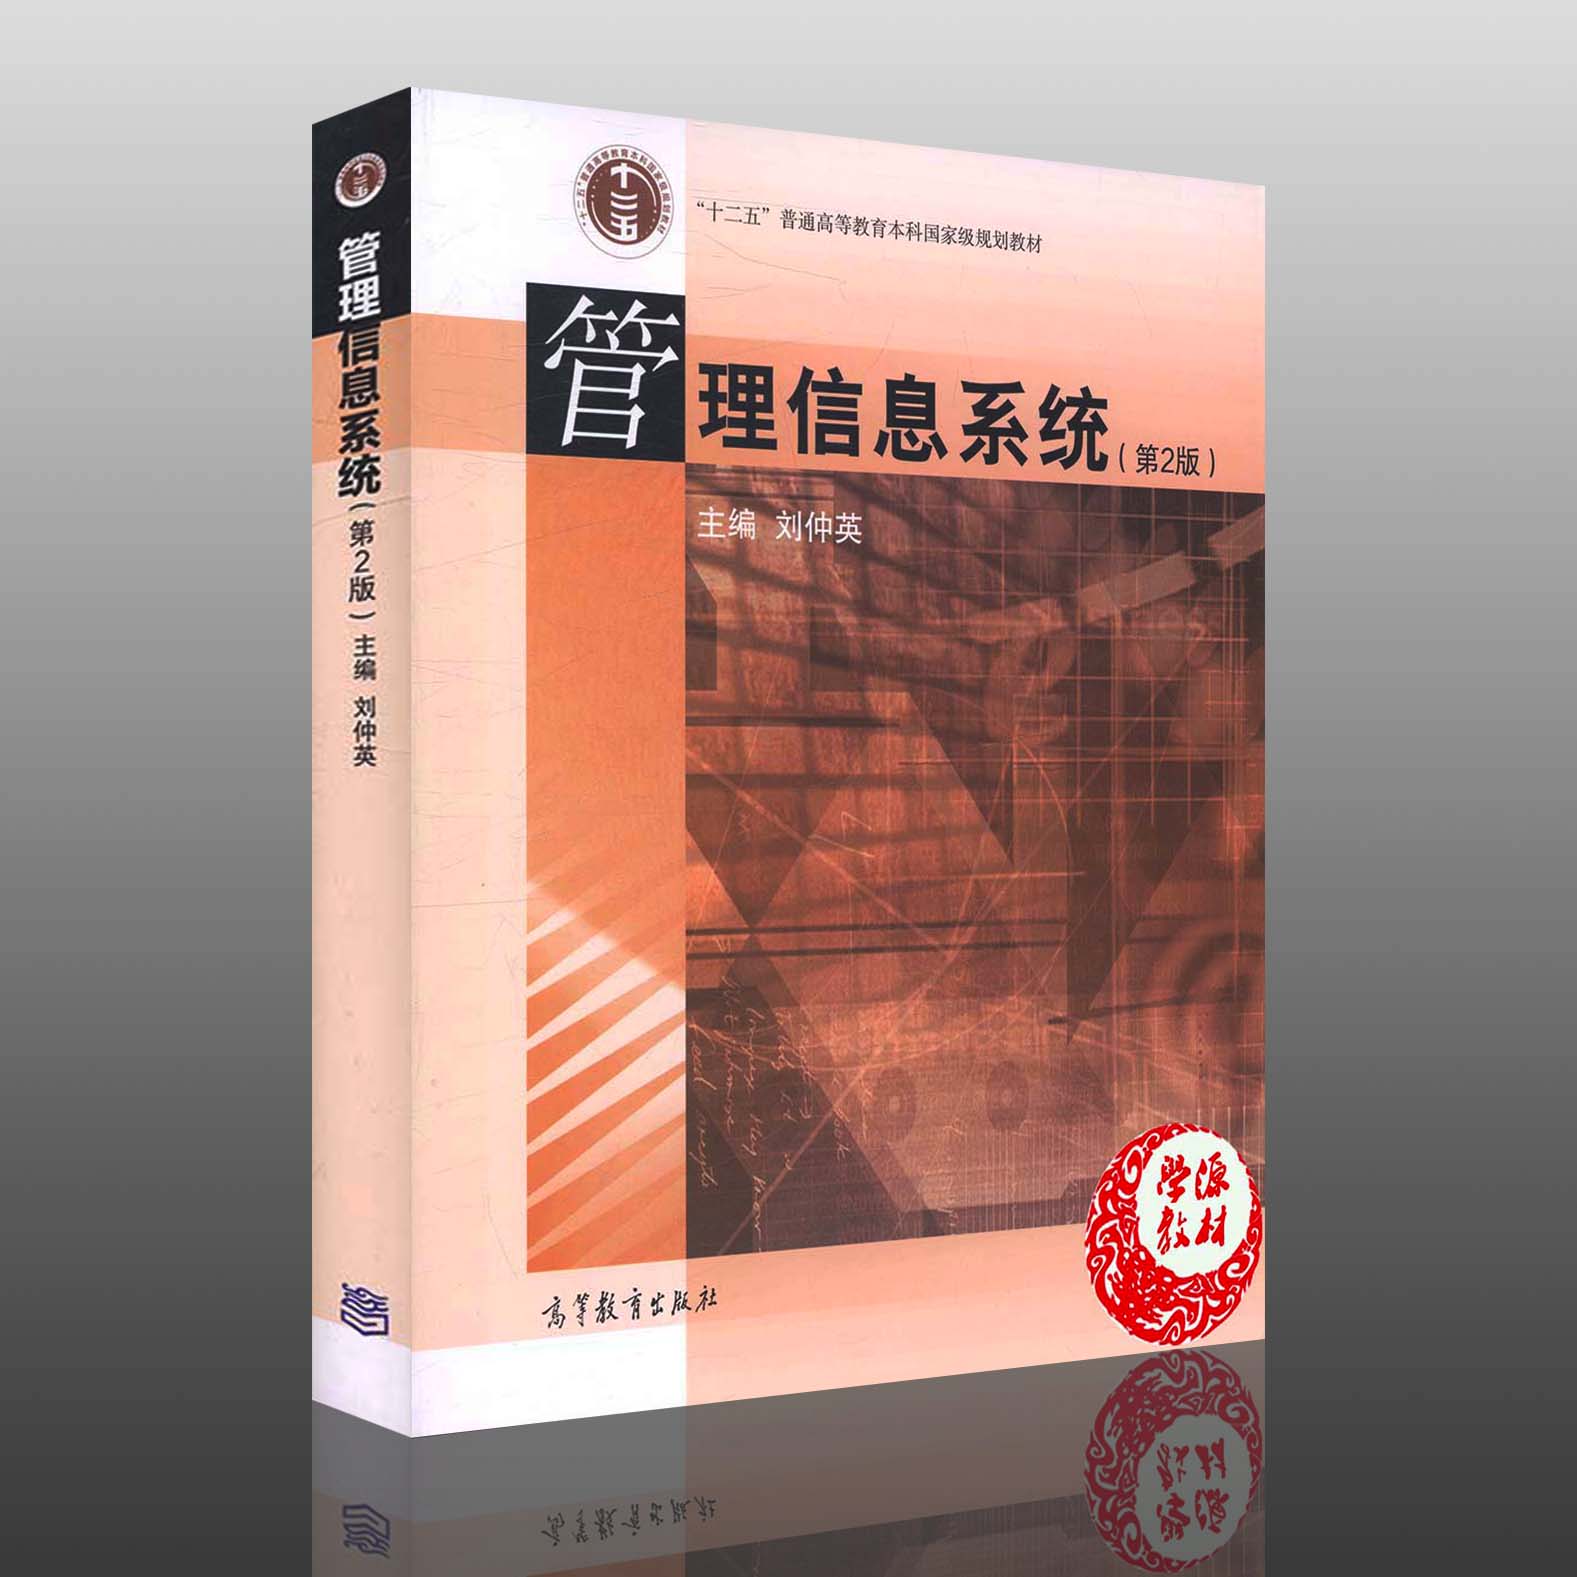 管理信息系统 第2版 二版 刘仲英 高等教育出版社9787040343199 信息管理和信息系统、管理科学与工程、工商管理、计算机应用